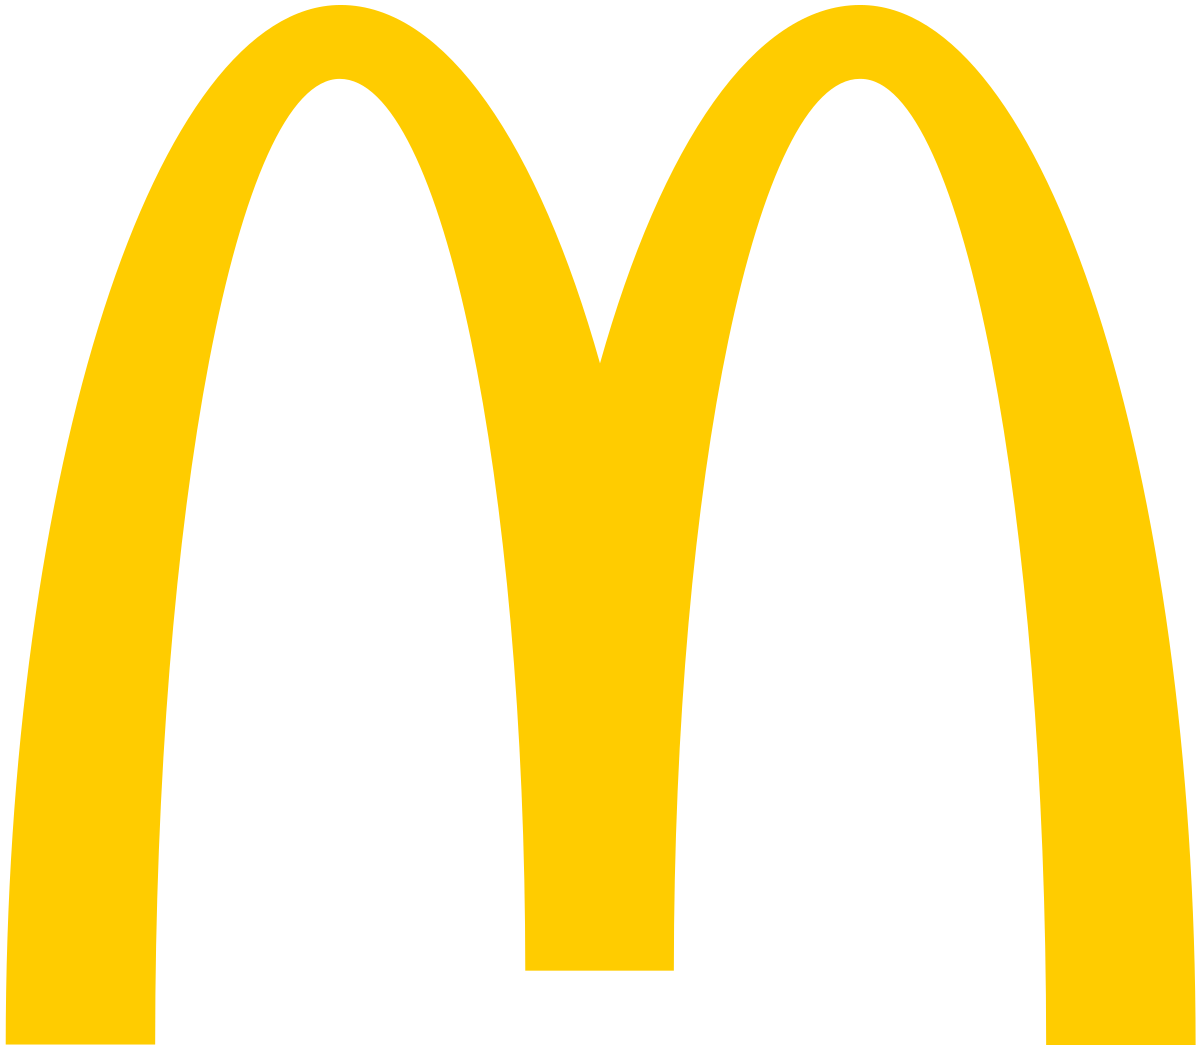 McDonalds_Golden_Arches.svg